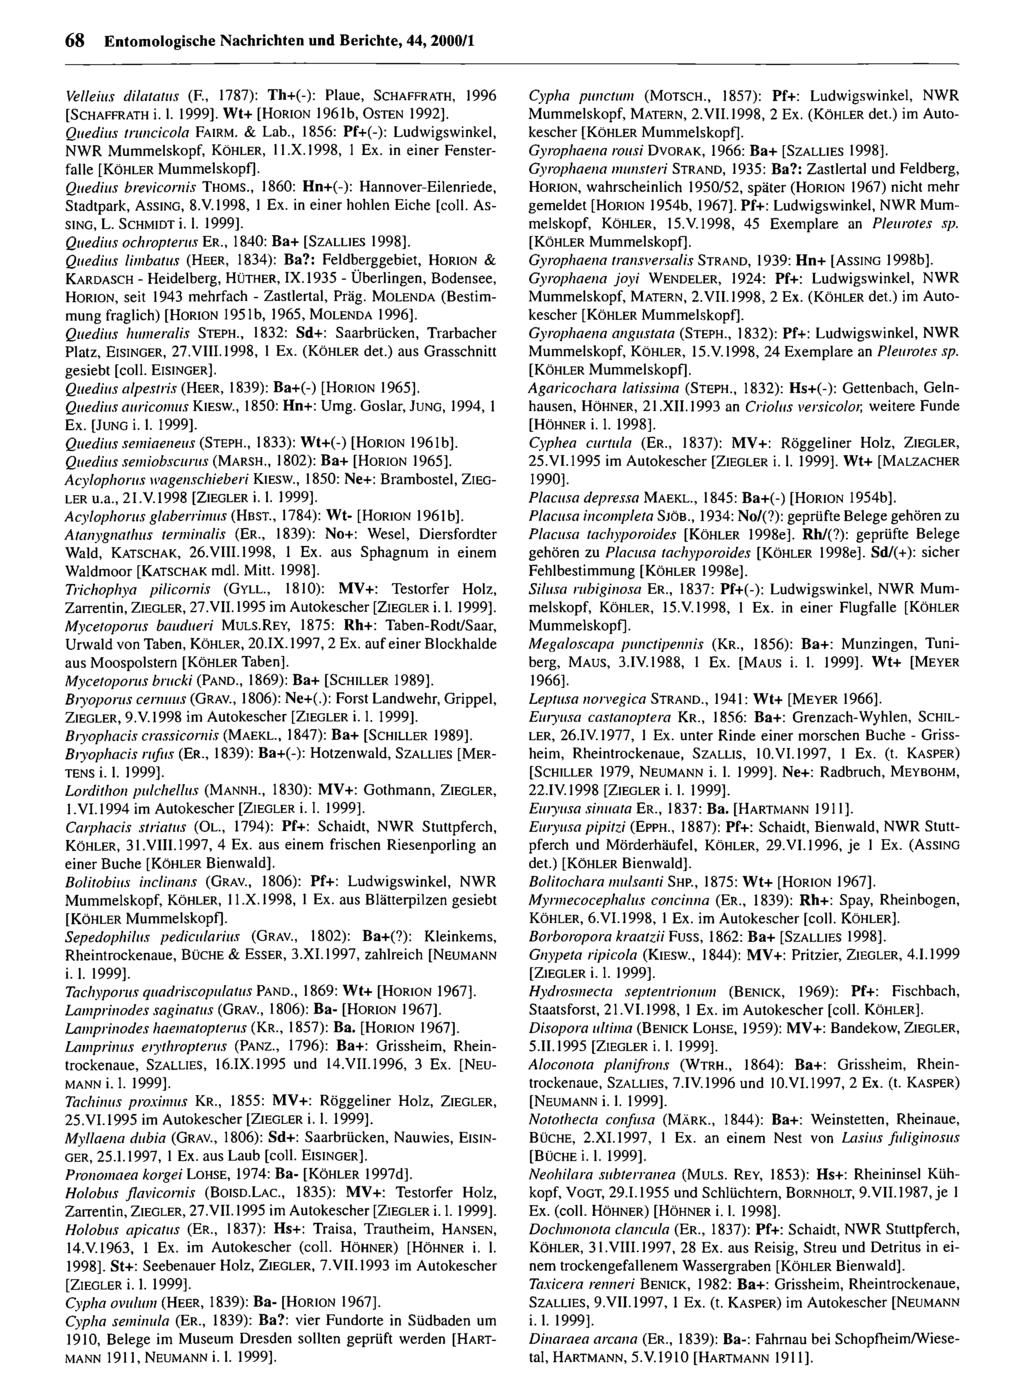 68 Entomologische Nachrichten Entomologische und Berichte, Nachrichten 44, 2000/1 und Berichte; download unter www.biologiezentrum.at Velleius dilatants (F.